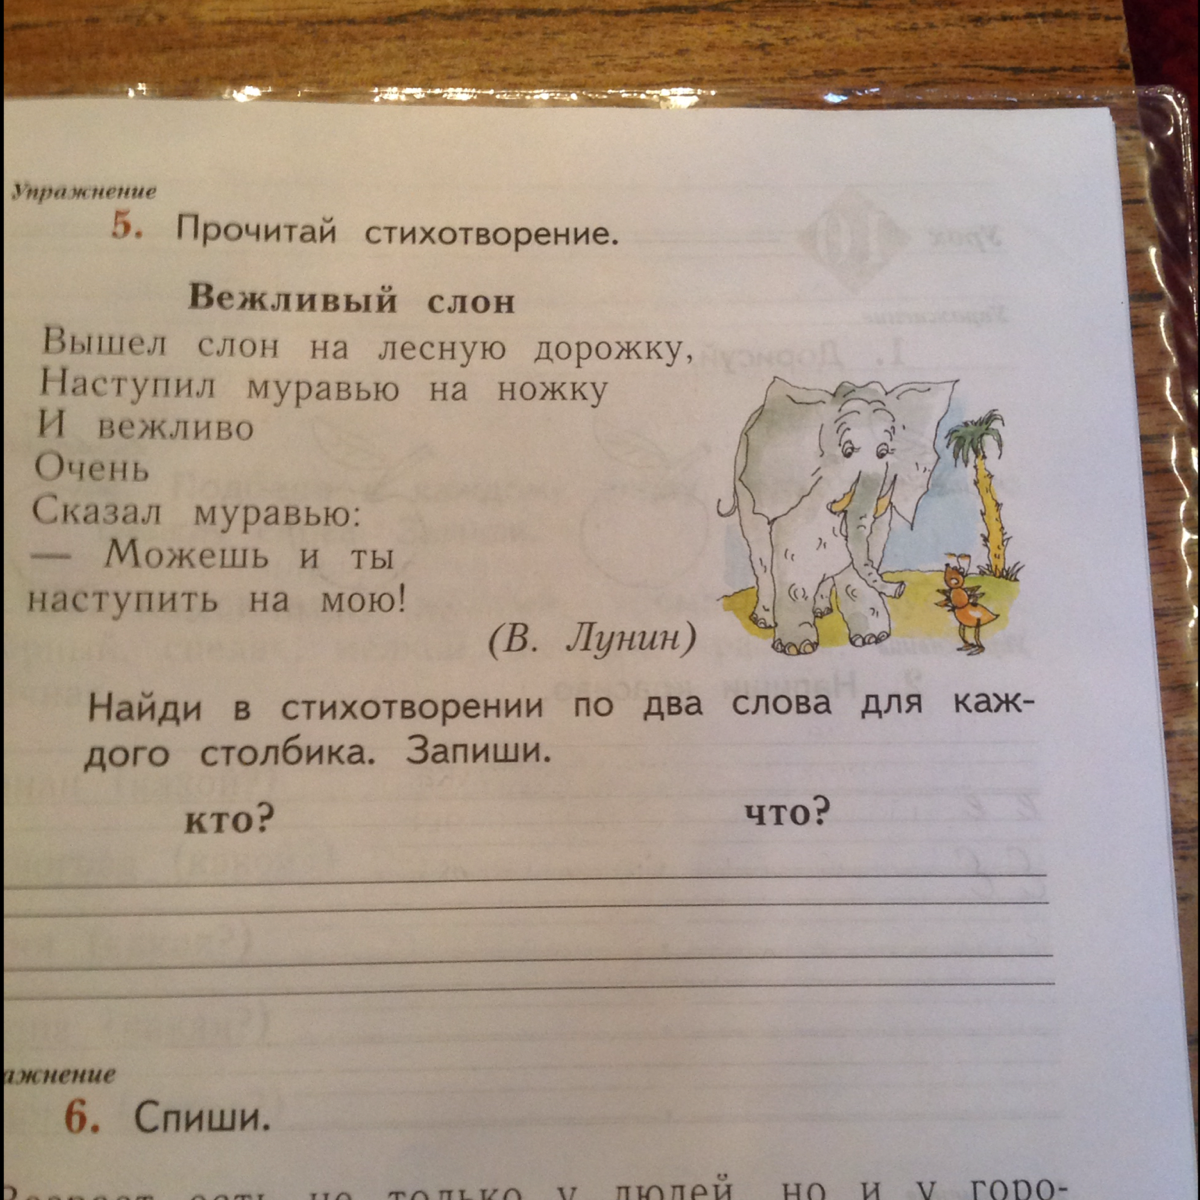 Вежливый вежлив 2 класс русский. Прочитай стихотворение вежливый слон. Вежливый слон стихотворение. Вежливый слон стихотворение русский язык. Вежливый слон вышел слон на лесную дорожку.